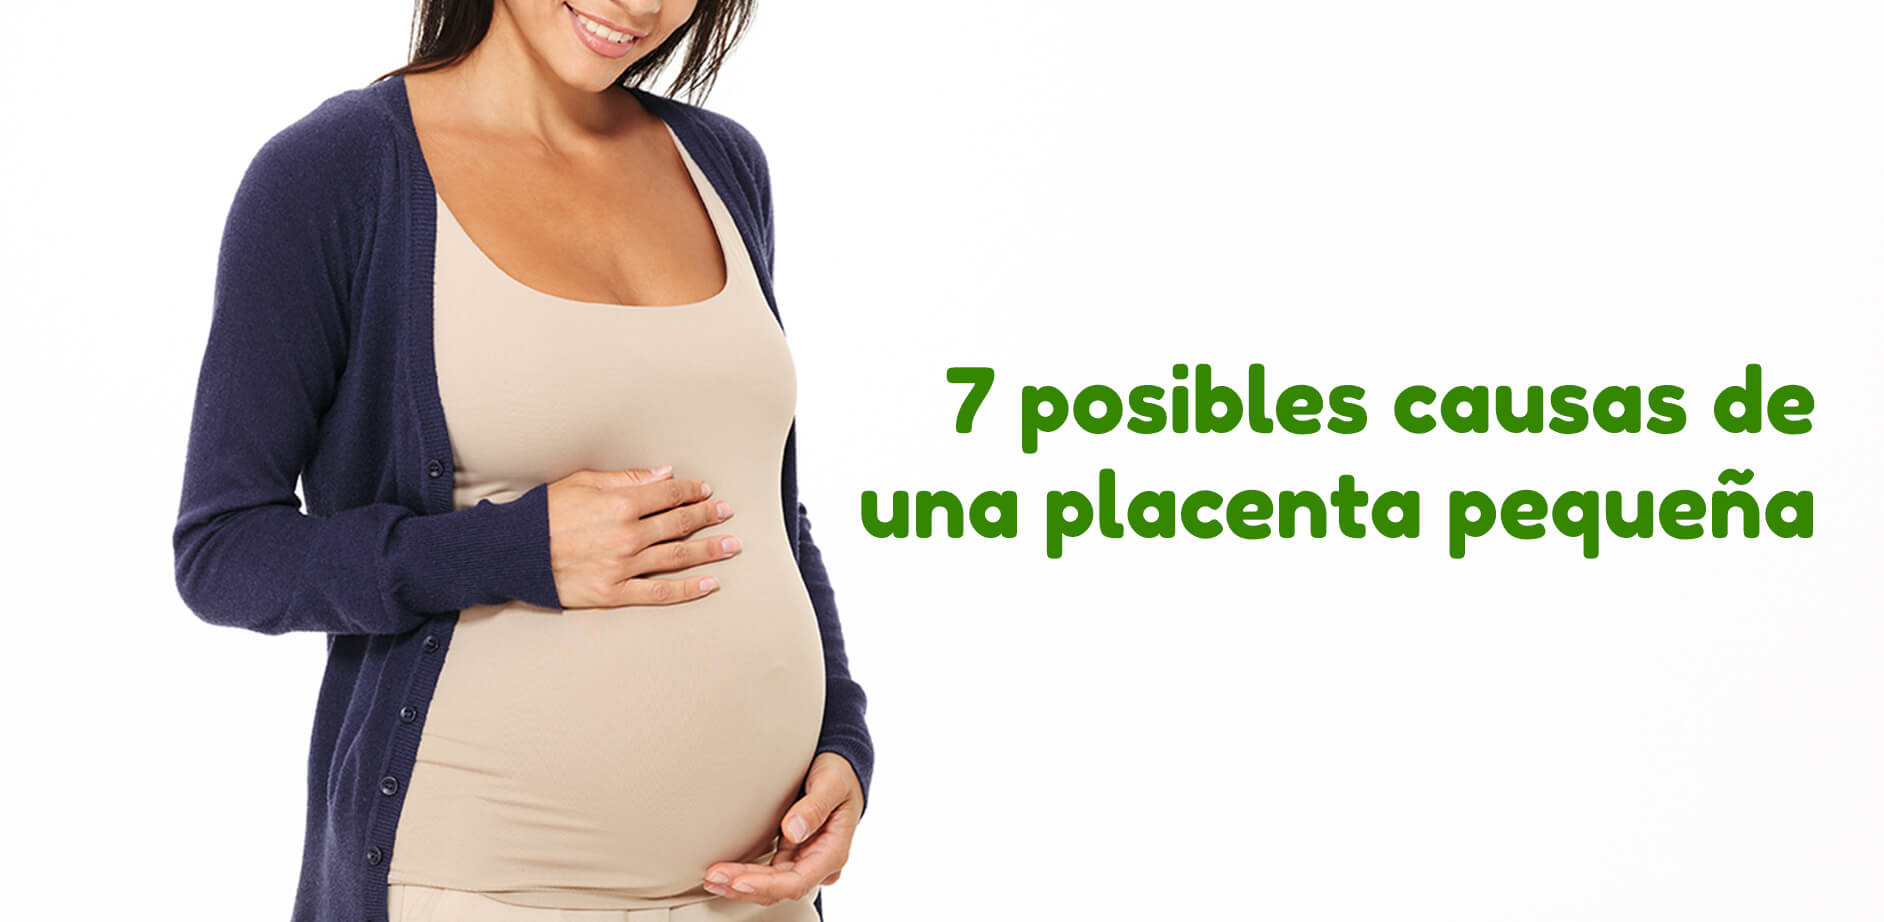 Hay un tema importante de conocer y te hablaremos de las 7 posibles causas de una placenta pequeña para saber cómo actuar.